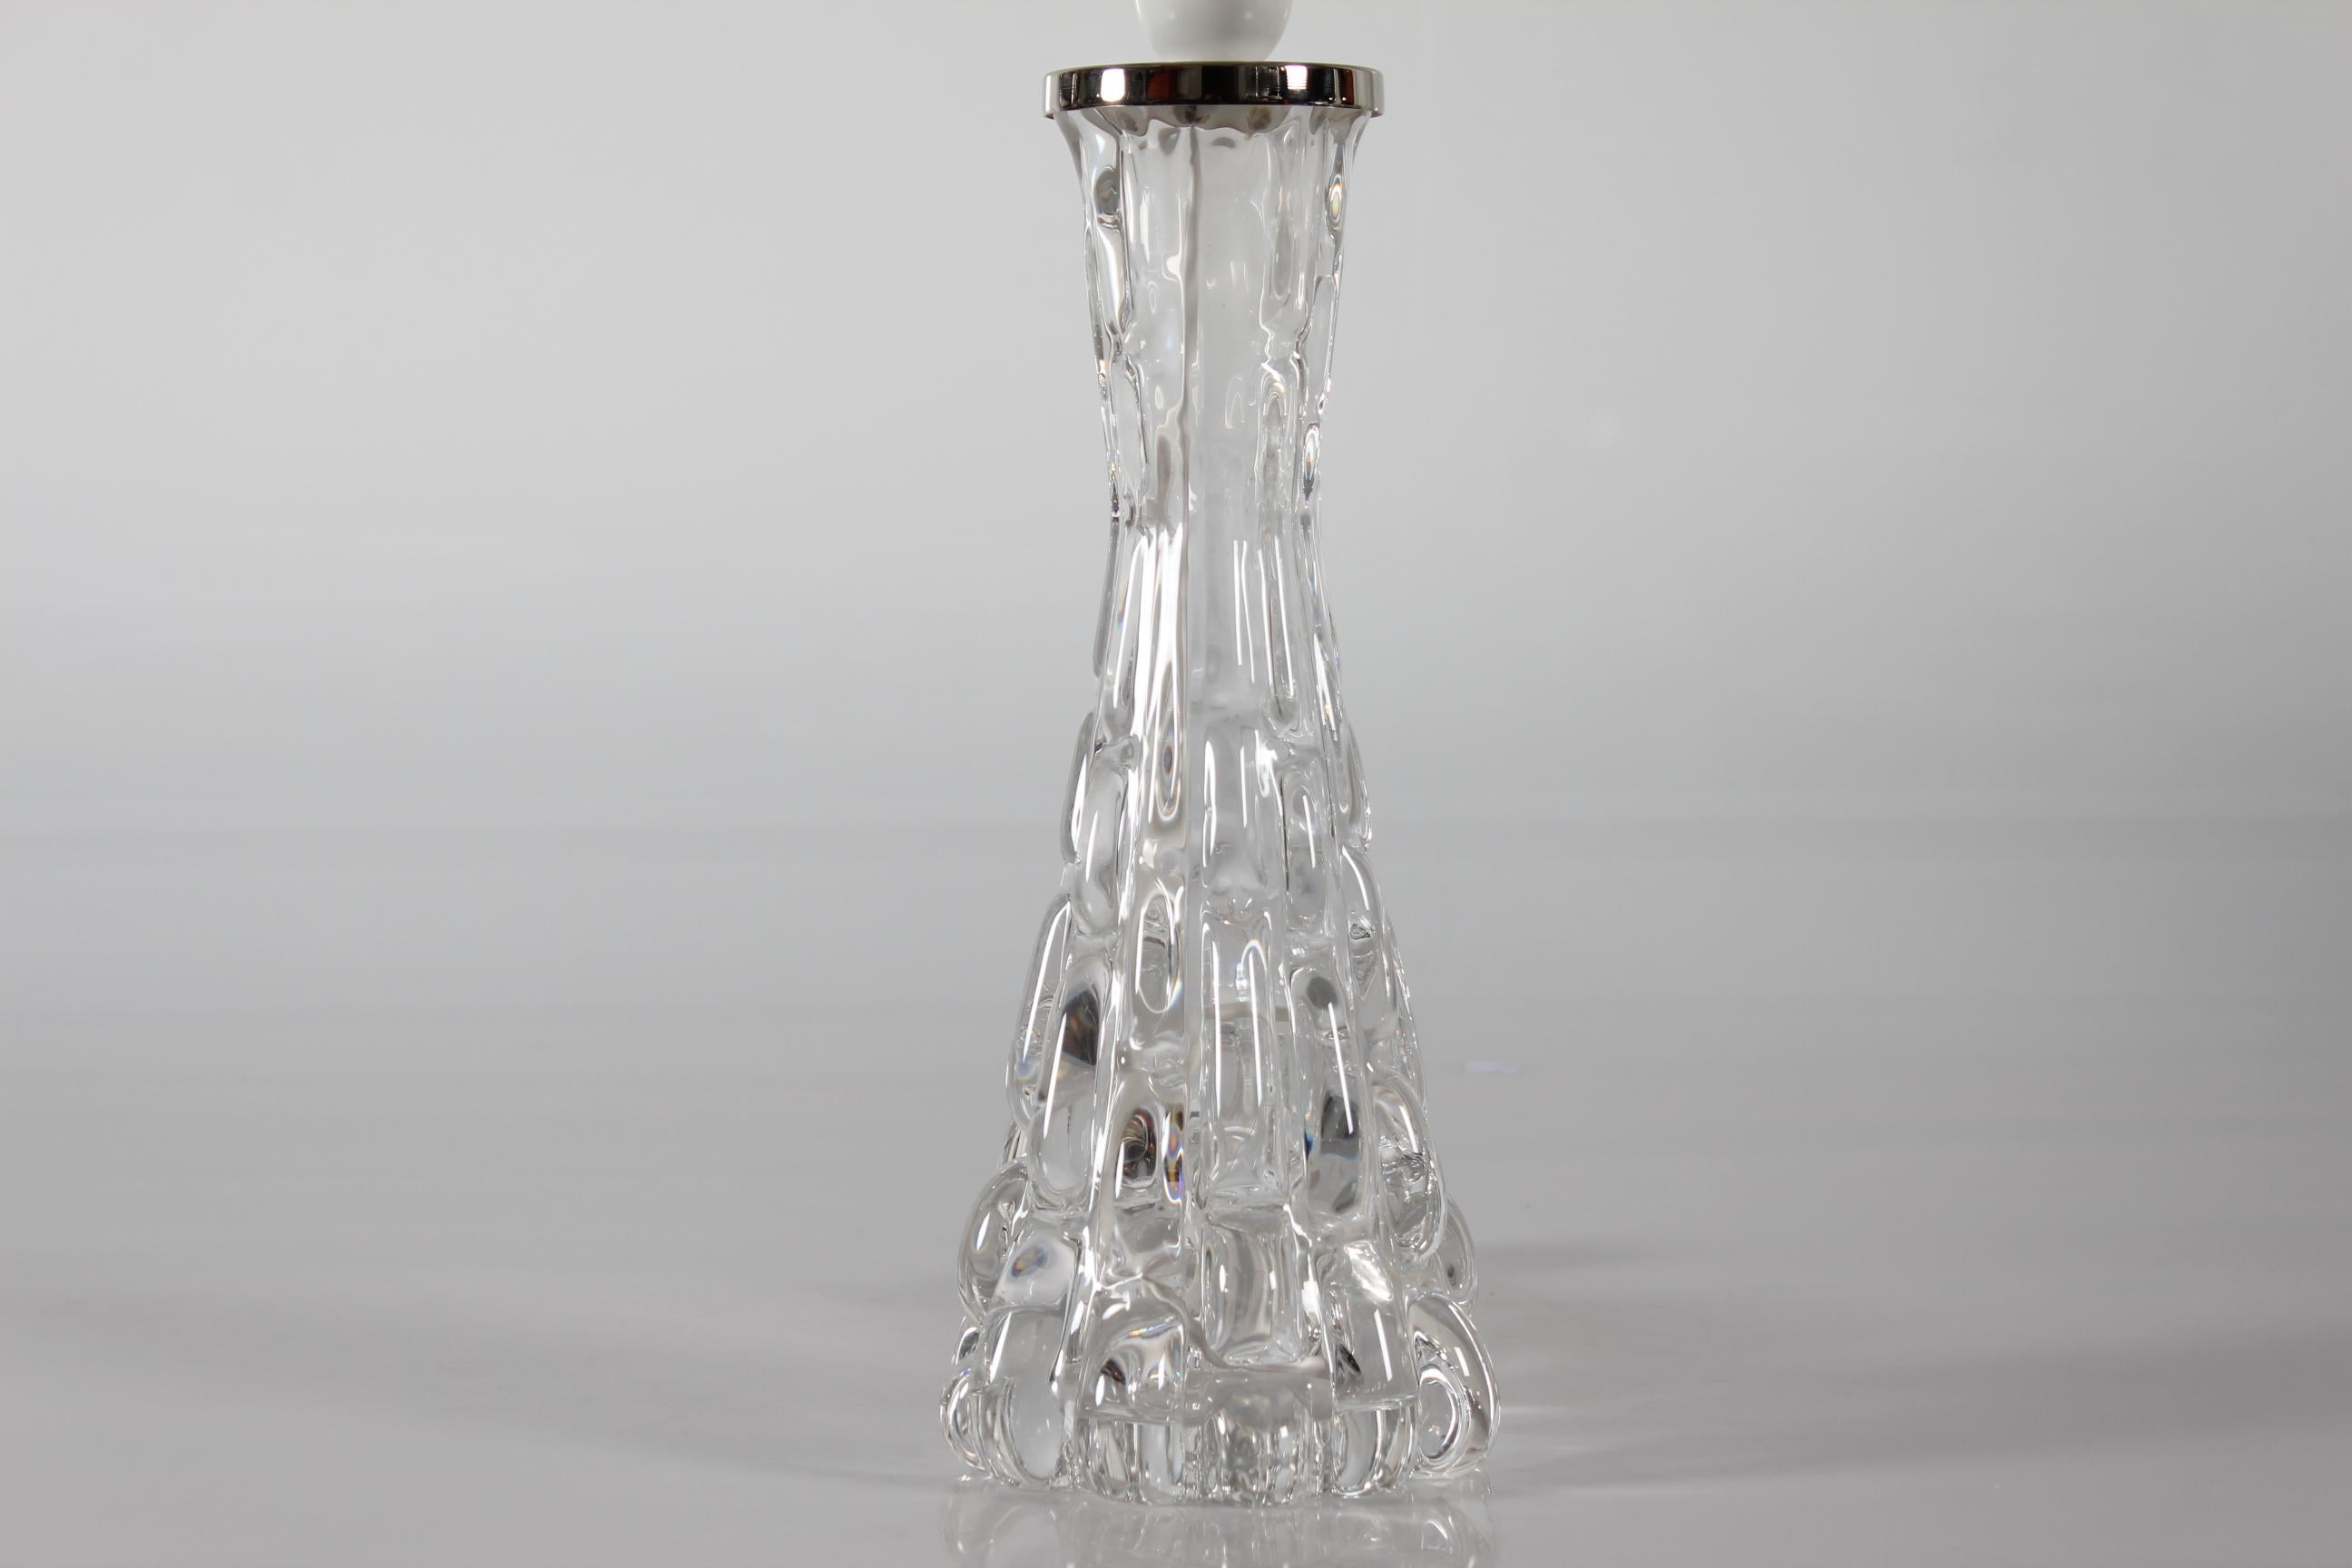 Lampe de table Carl Fagerlund fabriquée par Orrefors, Suède, dans les années 1960. 

La base de la lampe, haute et mince, est en verre transparent.

Vous trouverez également un nouvel abat-jour conçu au Danemark.
L'abat-jour est fait de tissu tissé